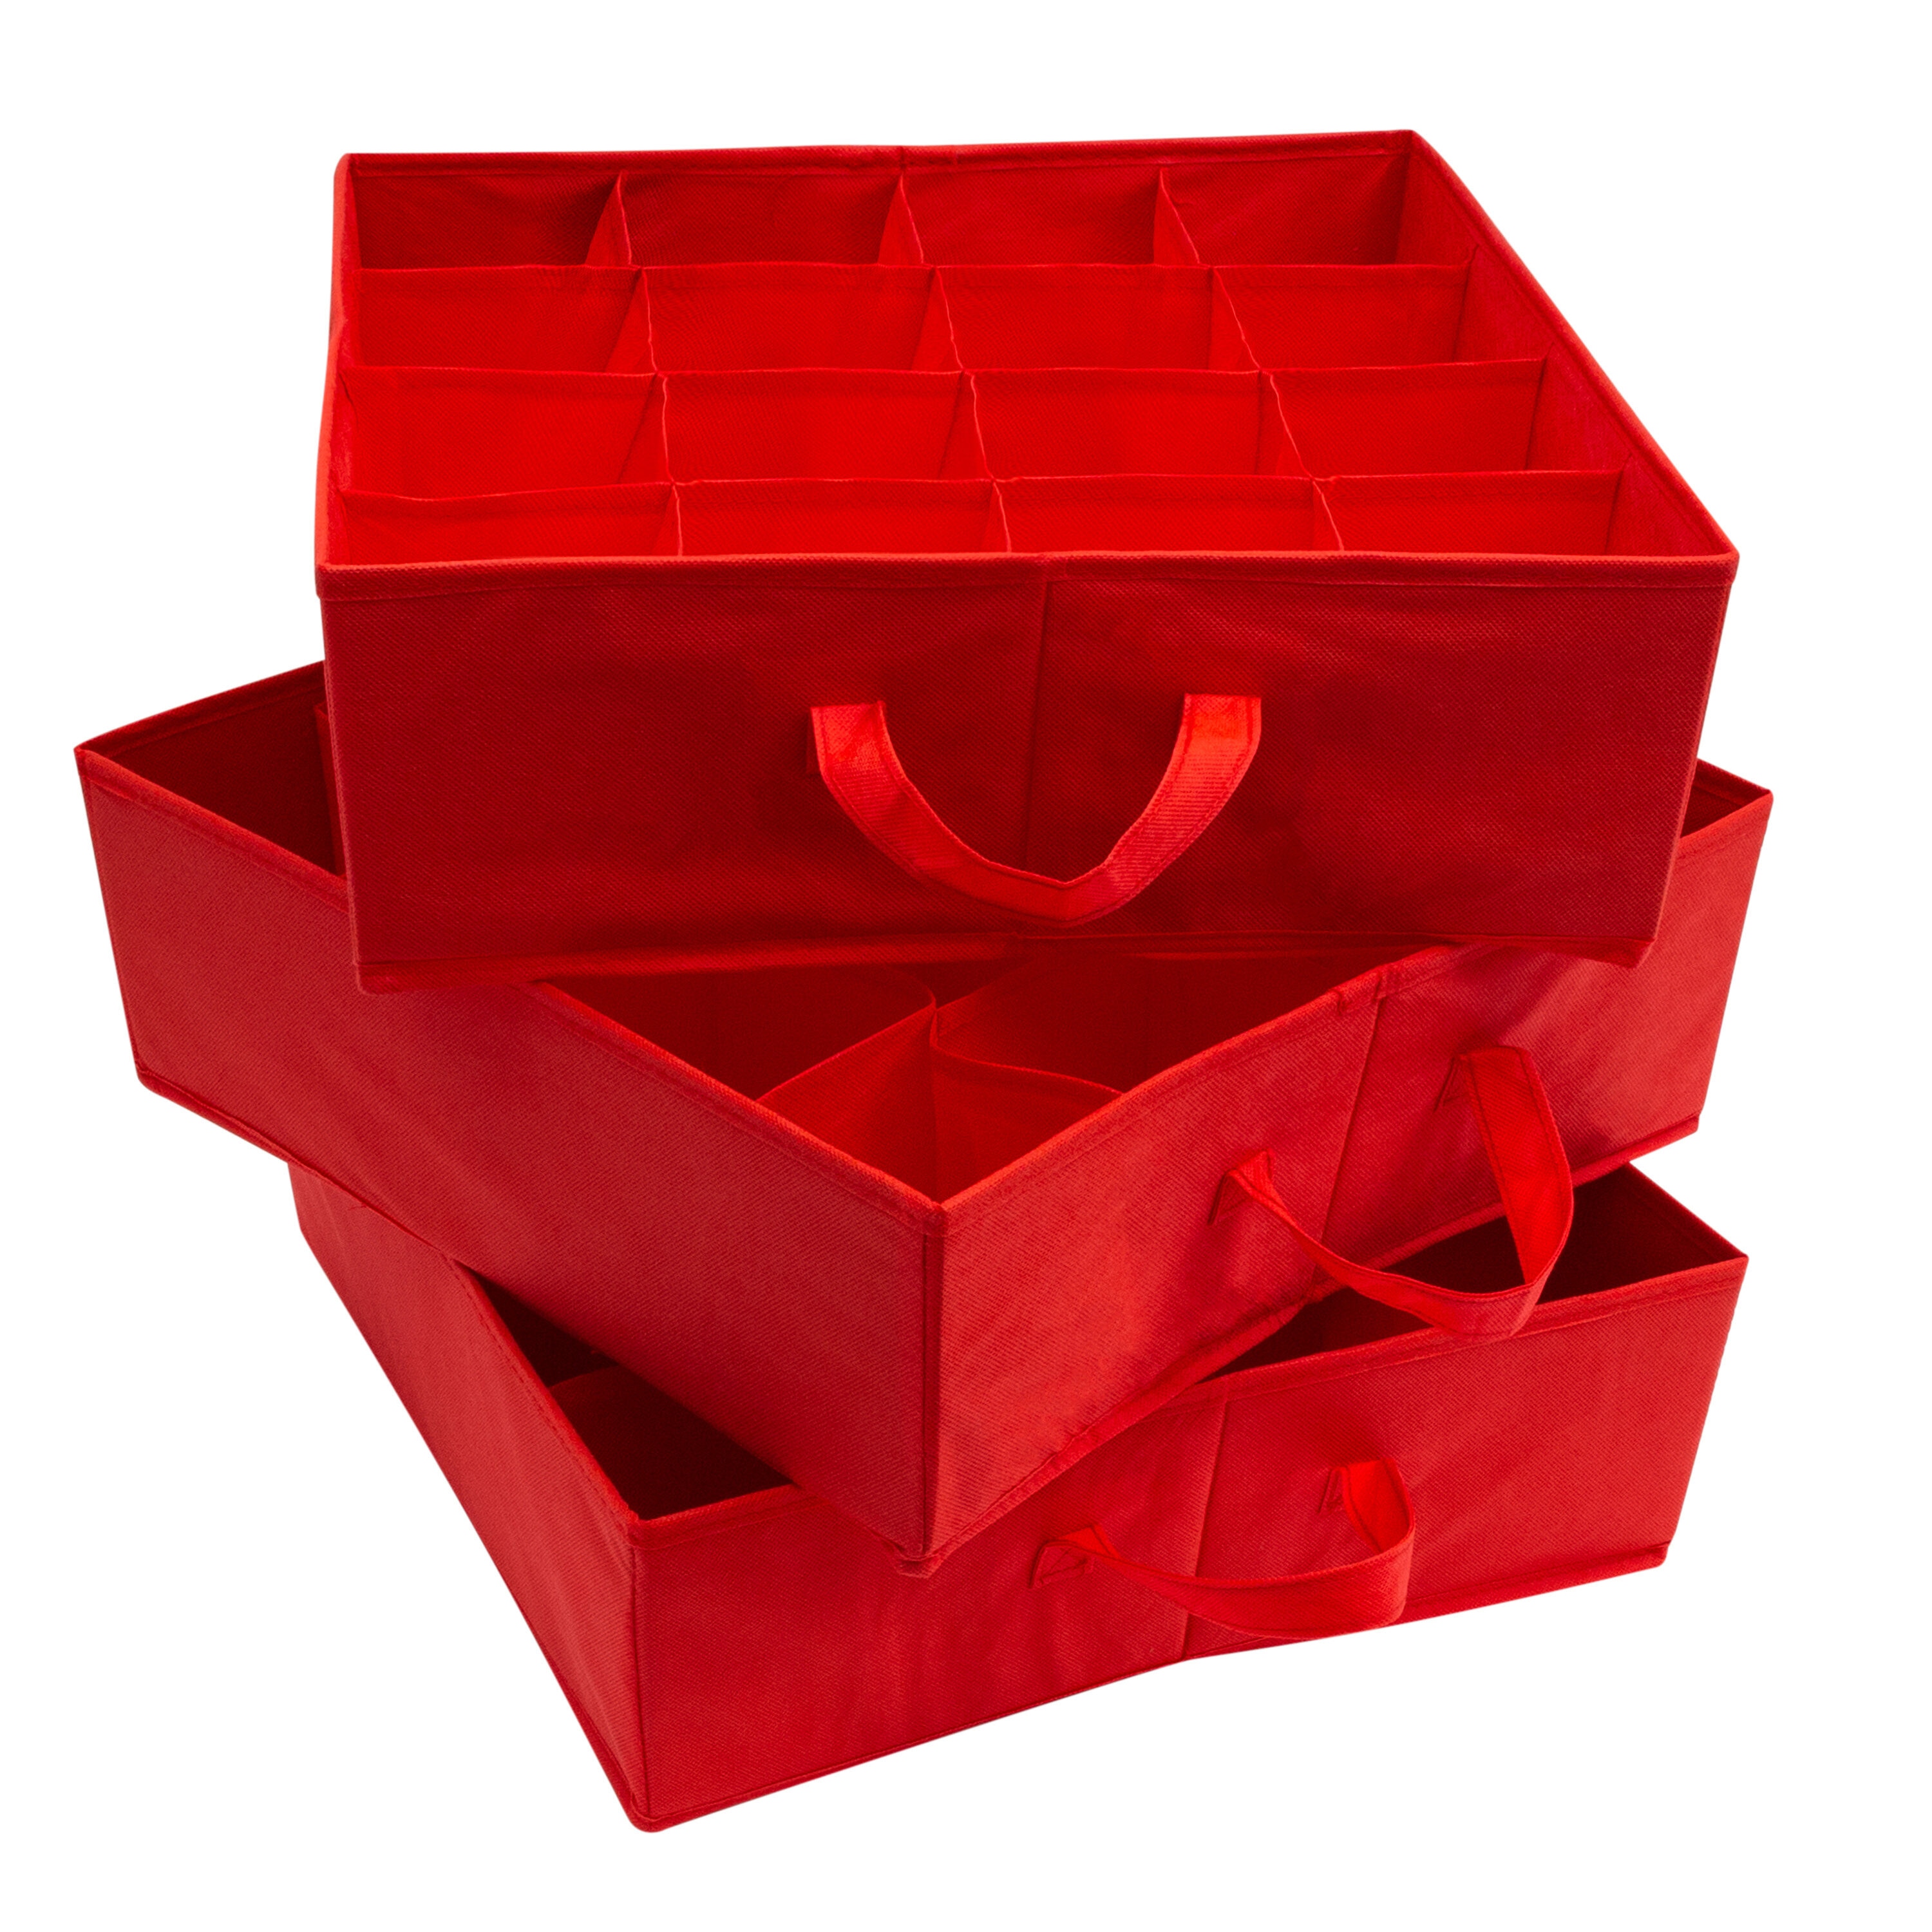 Cardboard Box Sizer & Reducer - Sealomatic R795